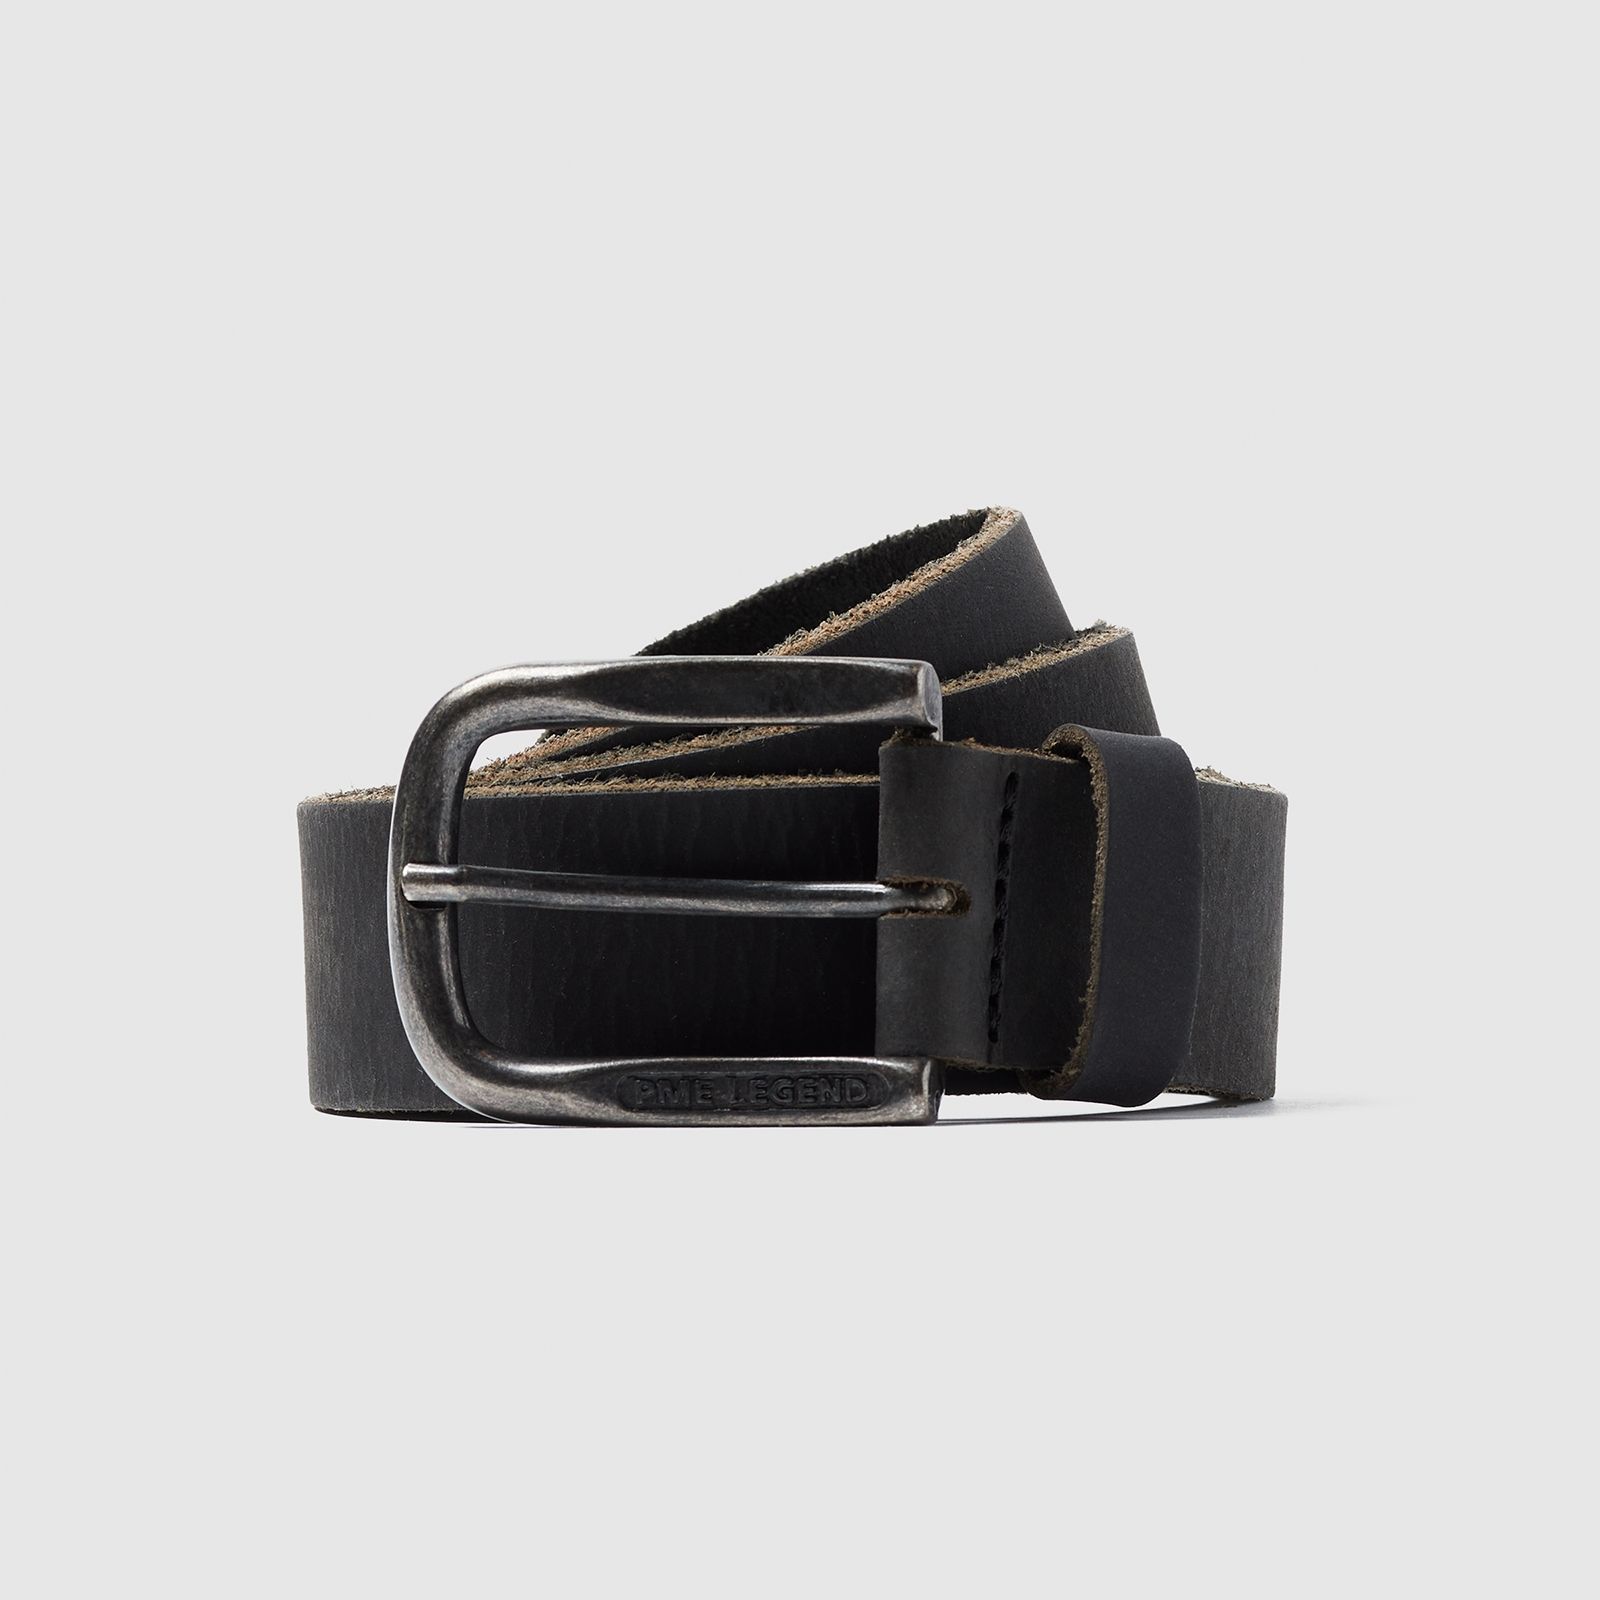 Pme Legend Belt Leather belt Black 00104960-999